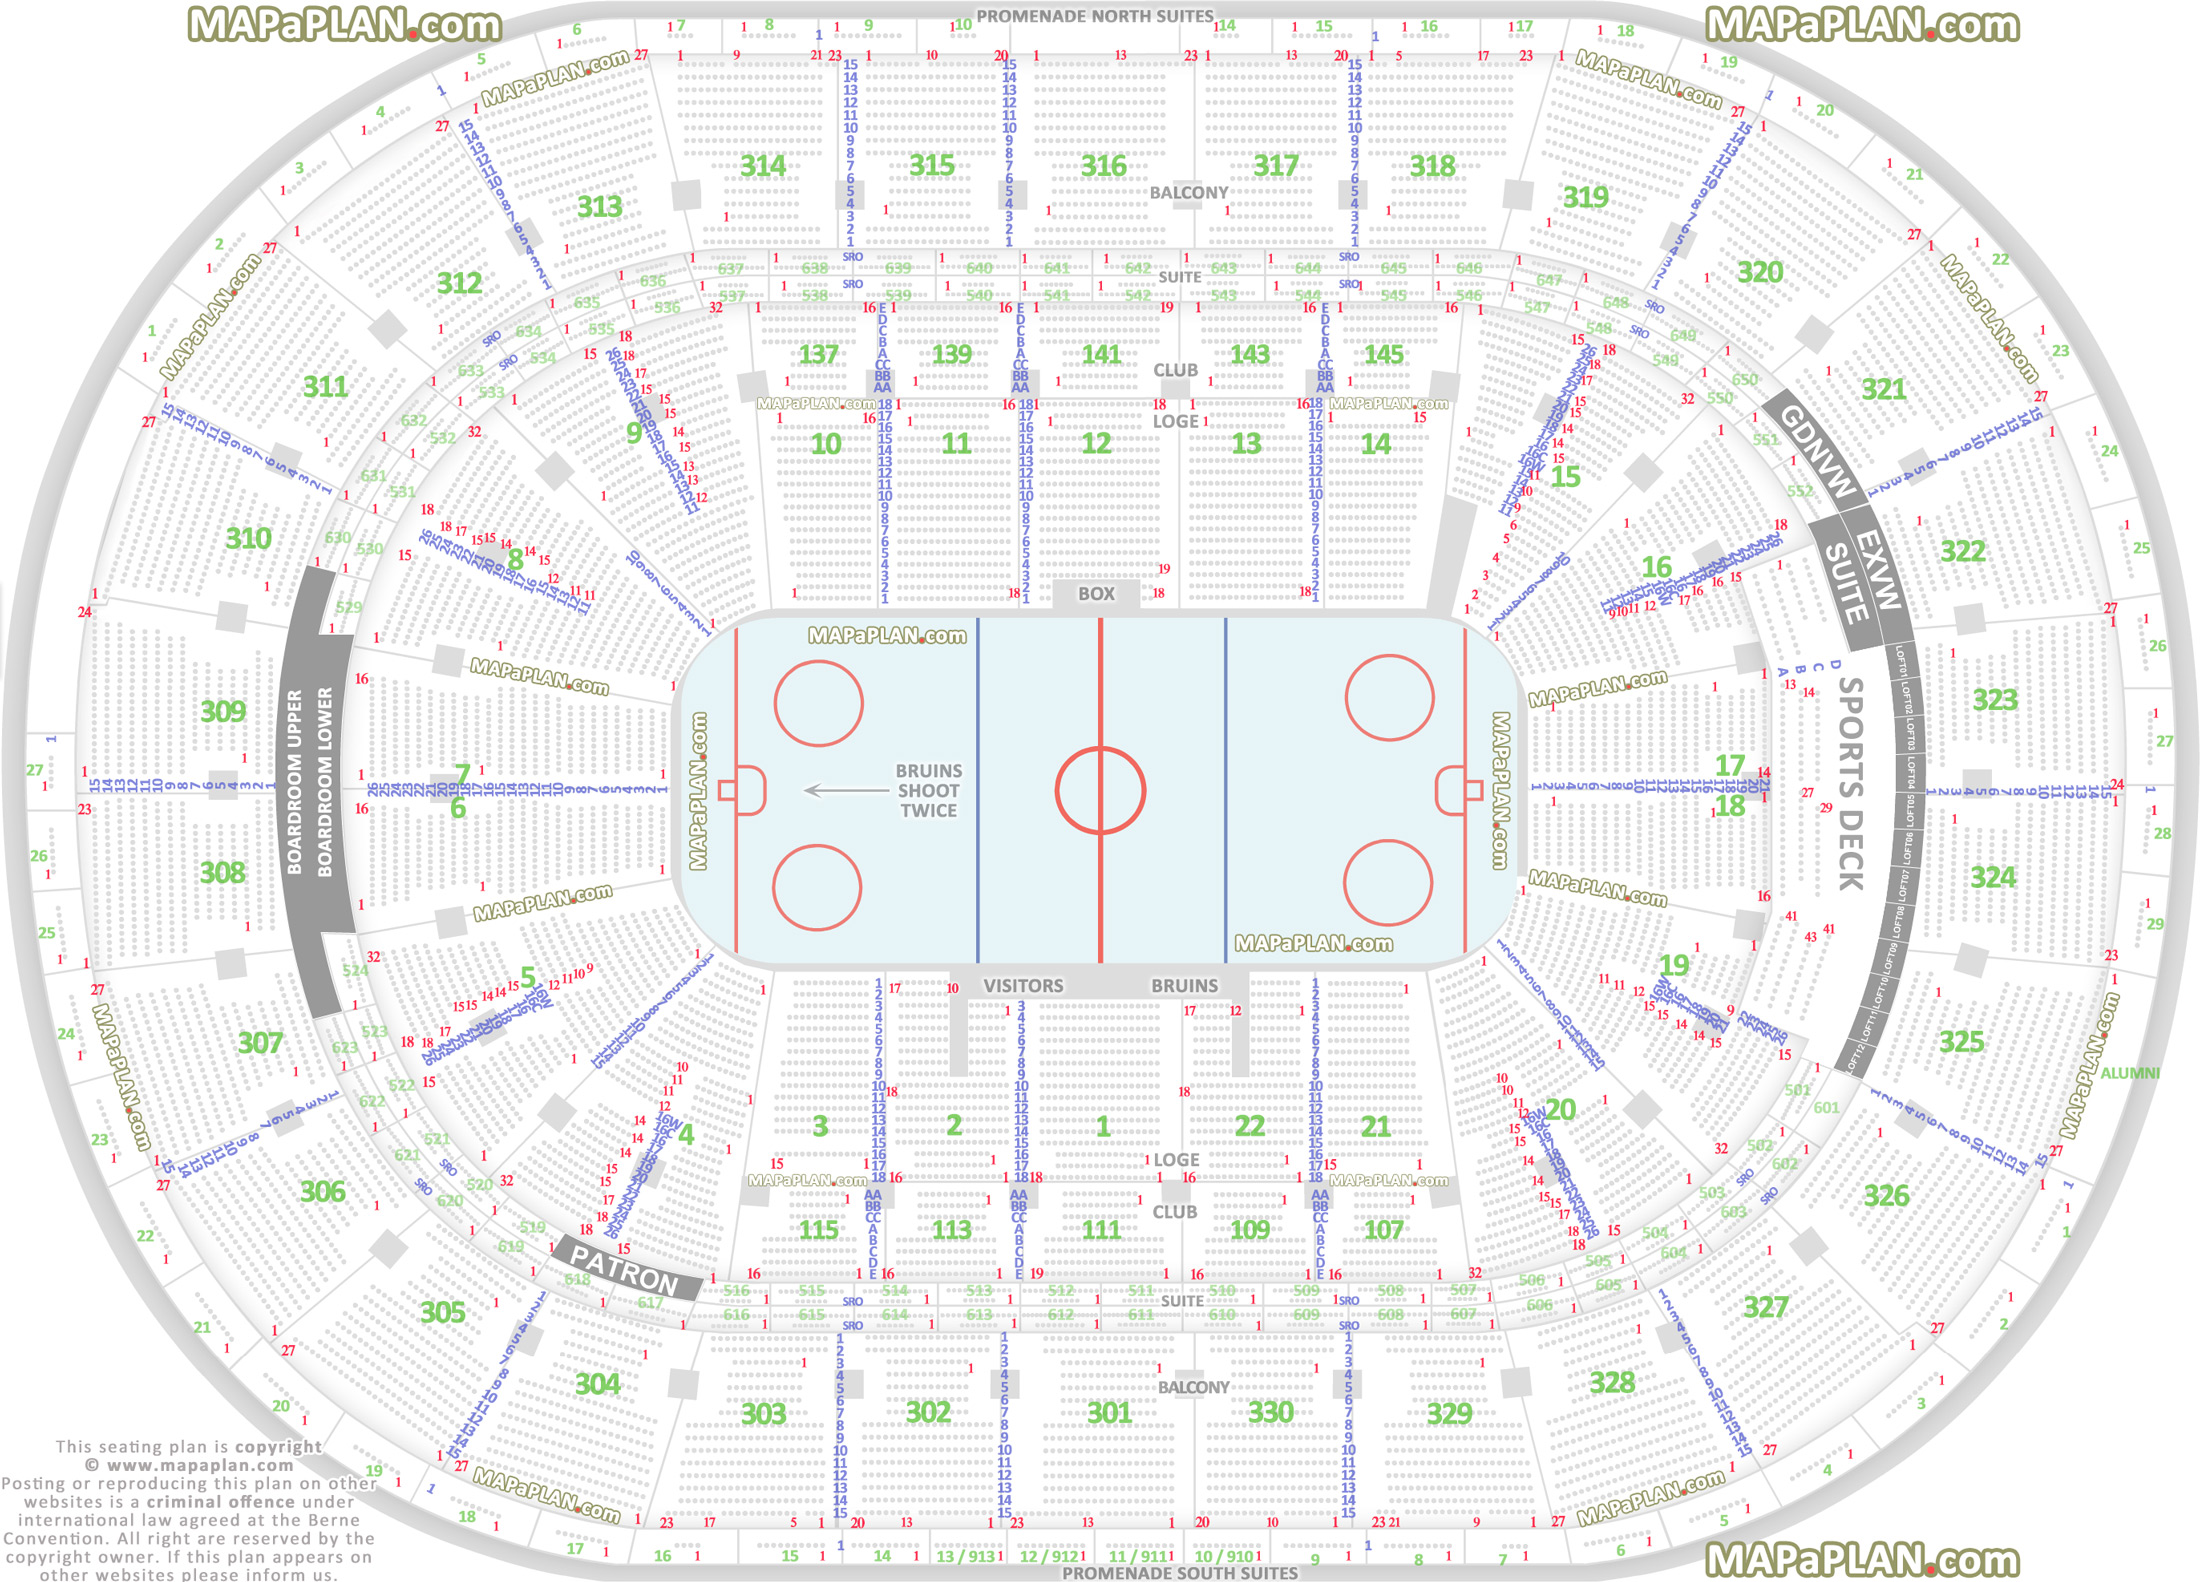 Breakdown Of The TD Garden Seating Chart, Boston Bruins